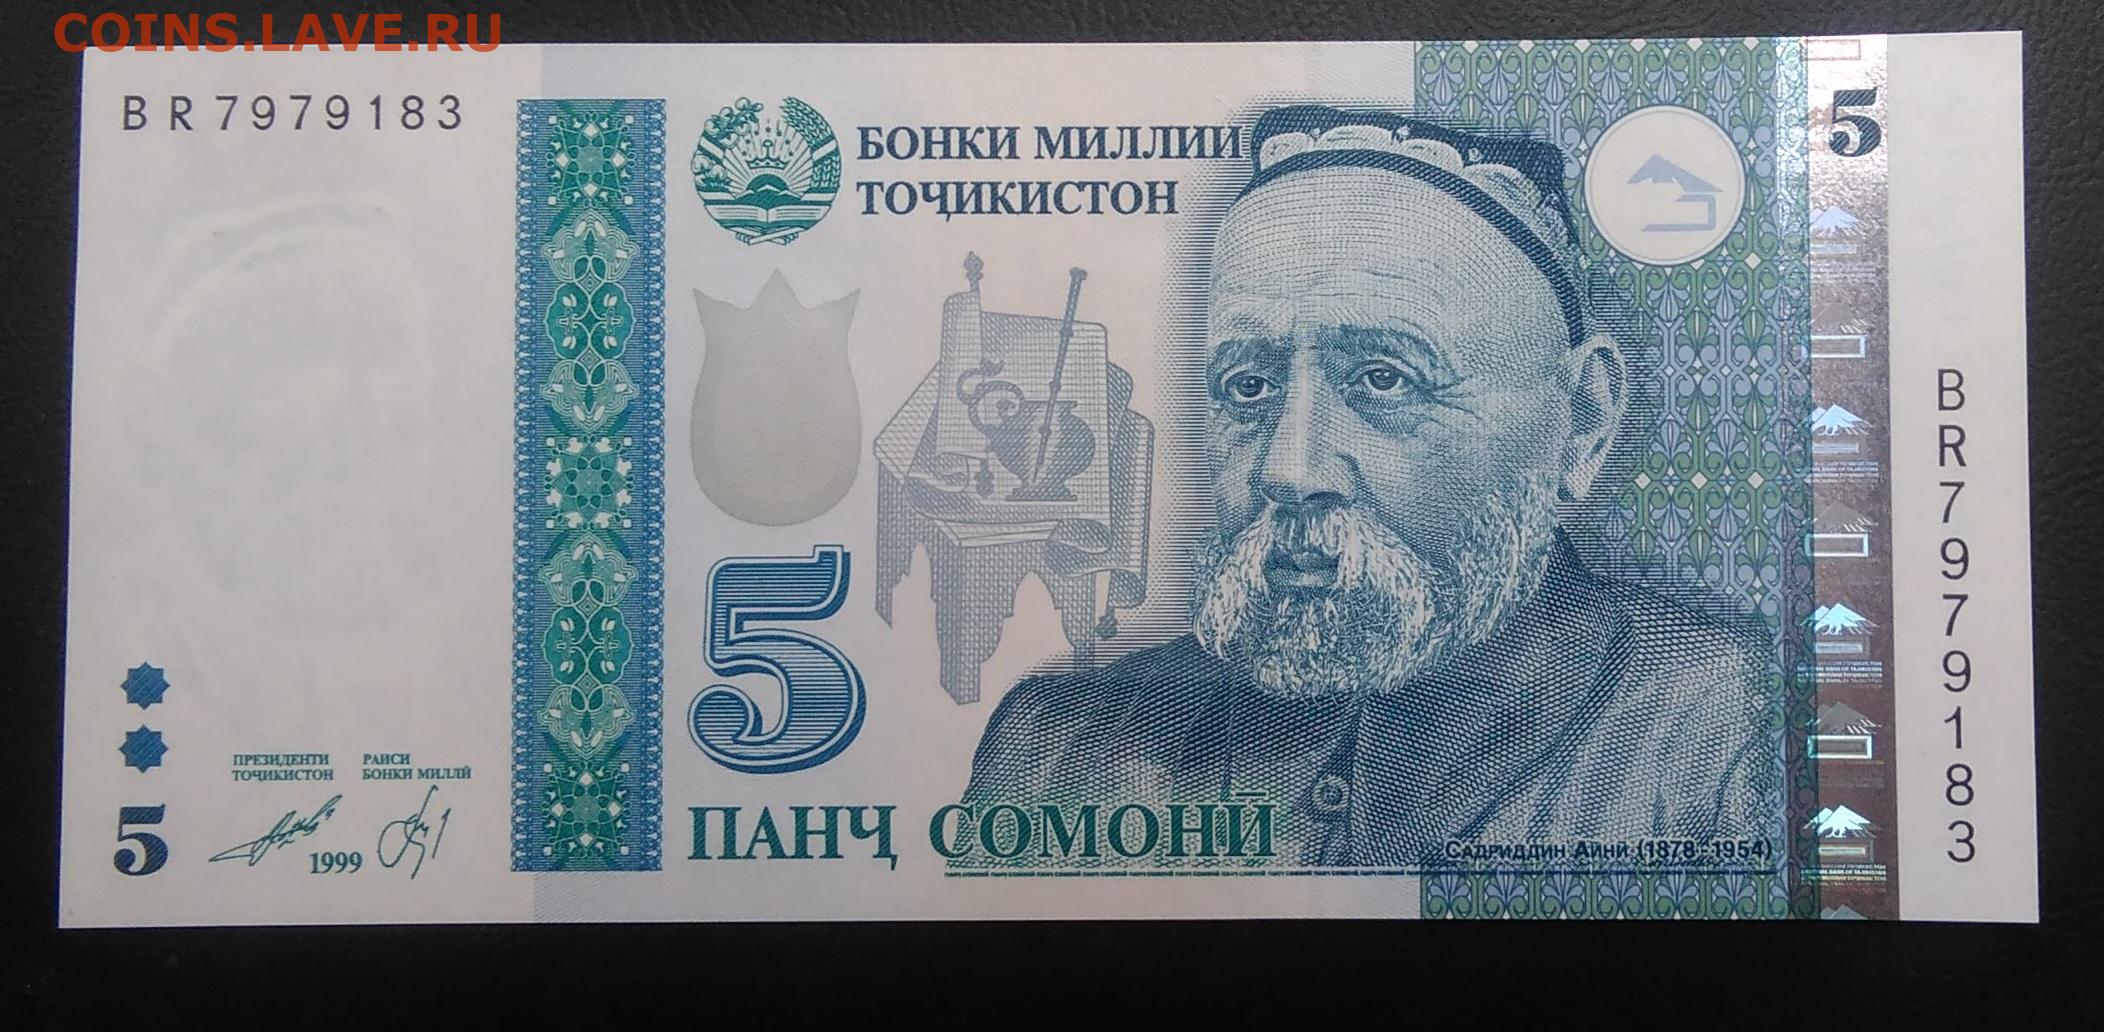 1 таджикский сомони. Банкноты Таджикистана: 5 Сомони. Купюры Таджикистана 1000 Сомони. Банкнота 10 Сомони 1999 год Таджикистан. Купюра Таджикистана 500 Сомони.